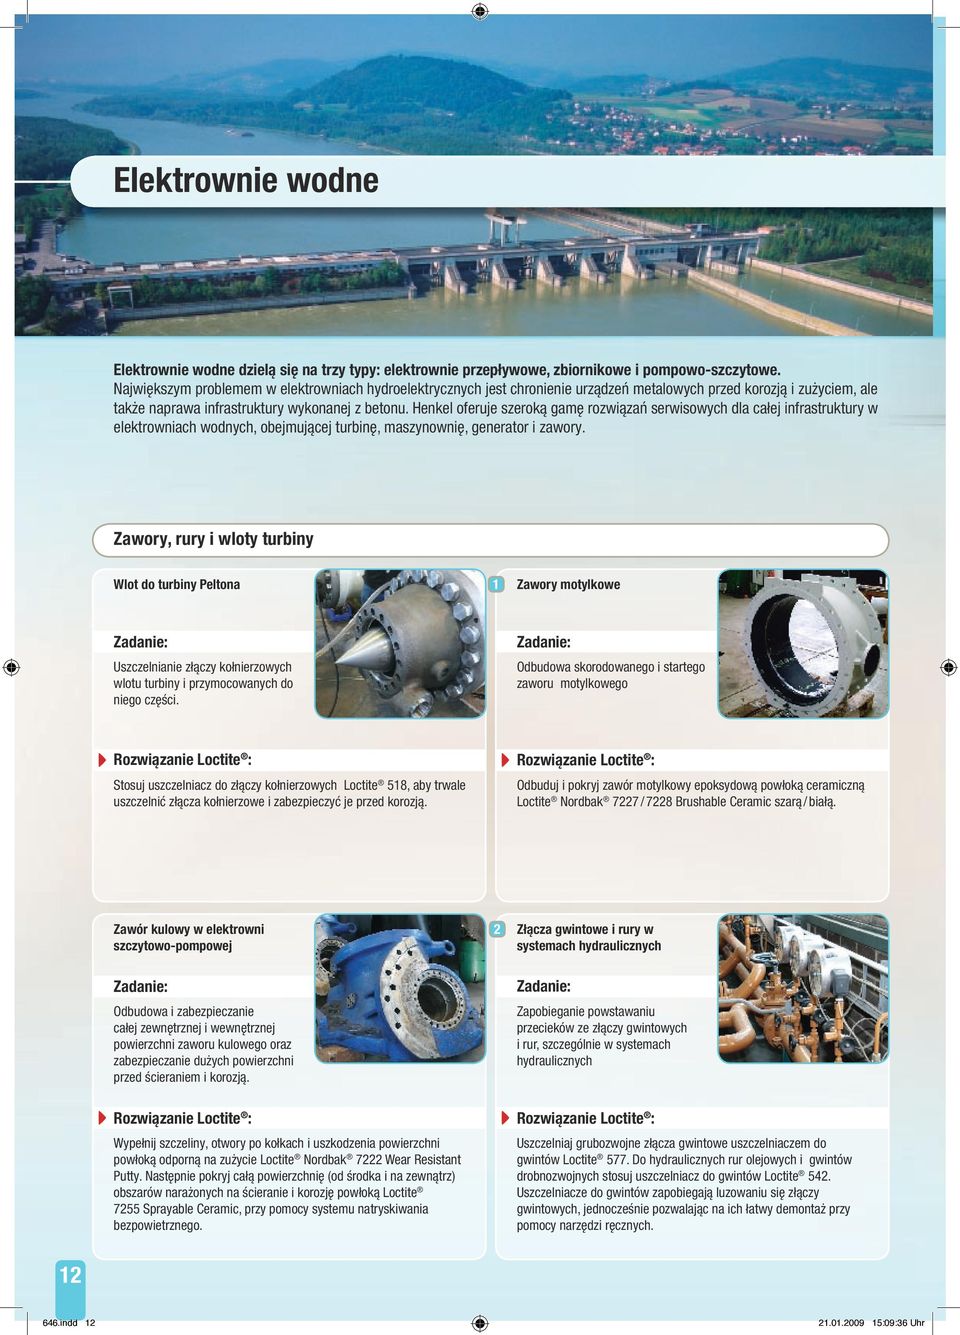 Henkel oferuje szeroką gamę rozwiązań serwisowych dla całej infrastruktury w elektrowniach wodnych, obejmującej turbinę, maszynownię, generator i zawory.